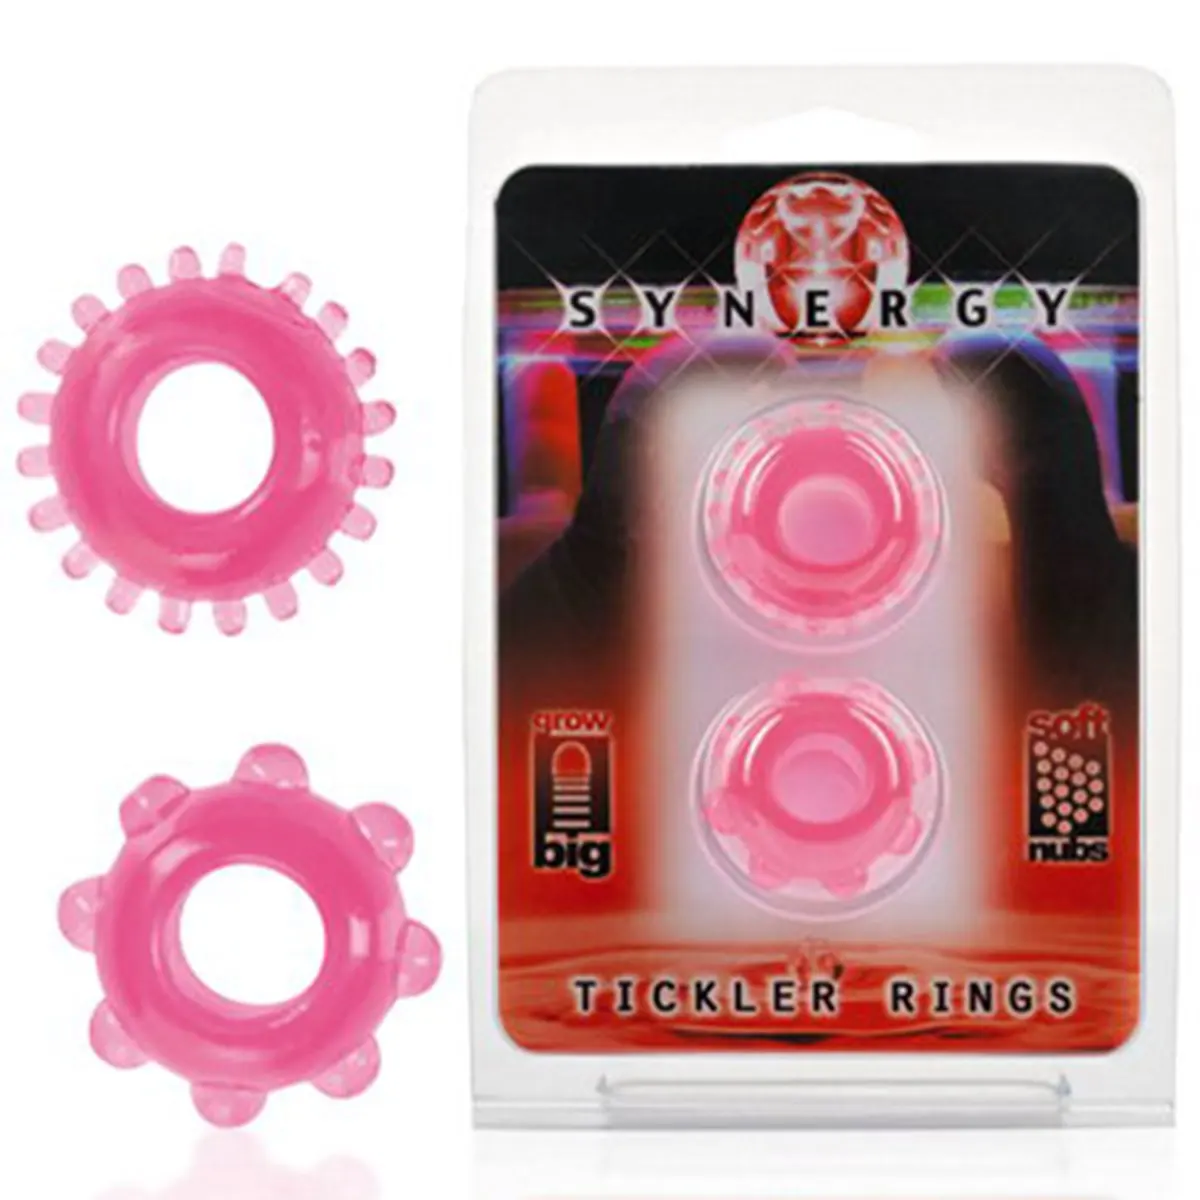 Roze prstenovi za penis 